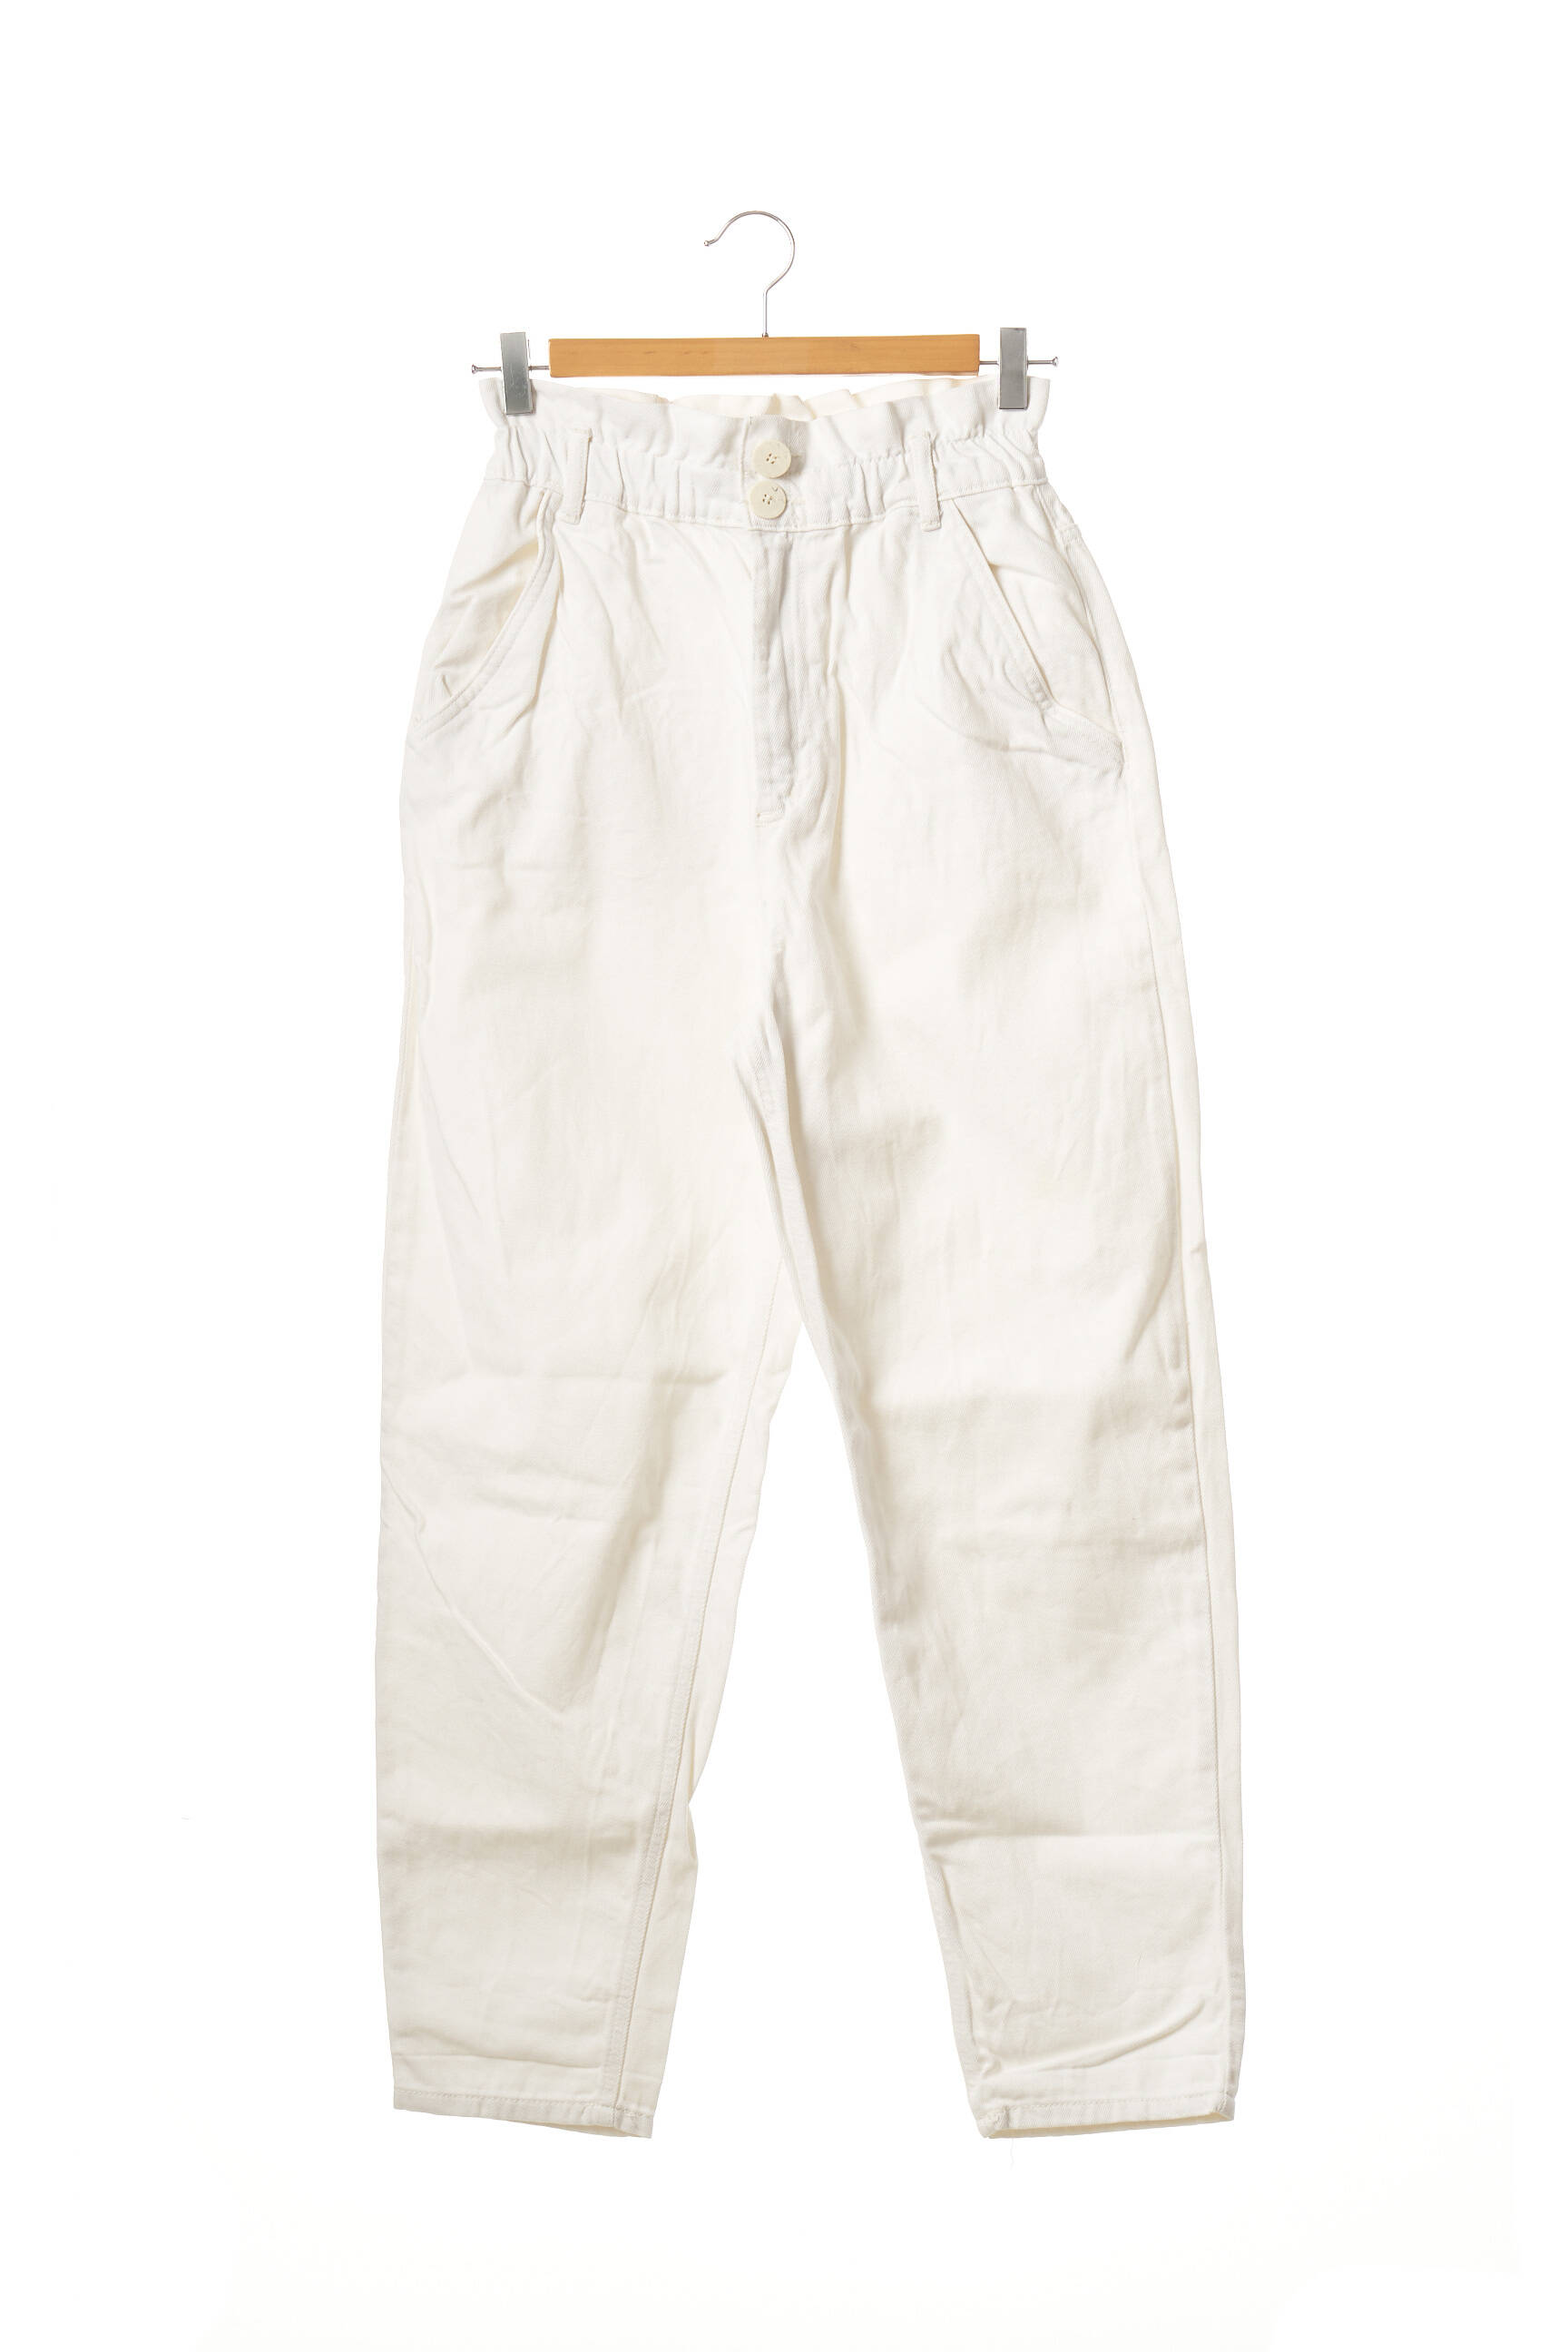 ZARA Pantalon 7/8 de couleur blanc en soldes pas cher 1804298-blanc0 - Modz